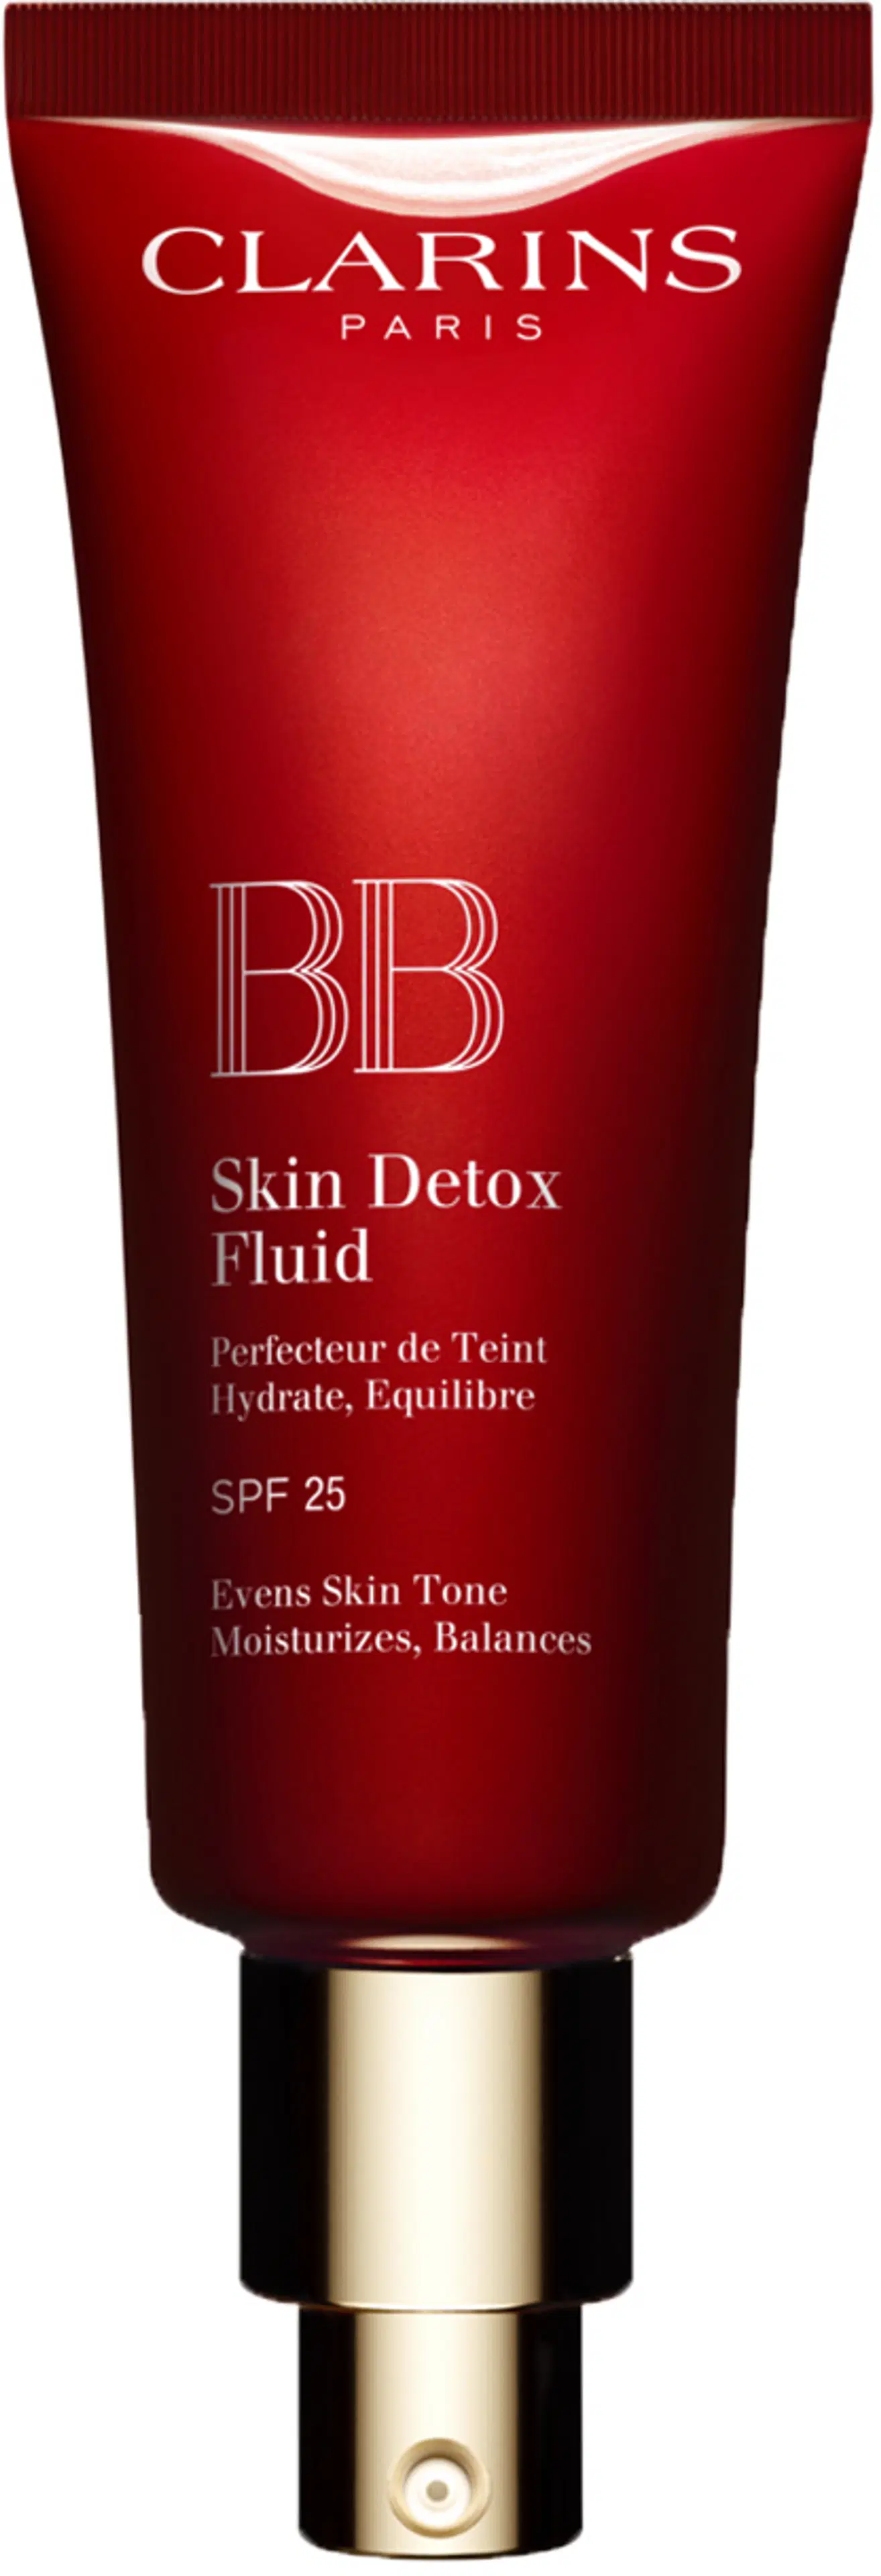 Clarins BB Skin Detox Fluid SPF 25 meikkivoide 45 ml